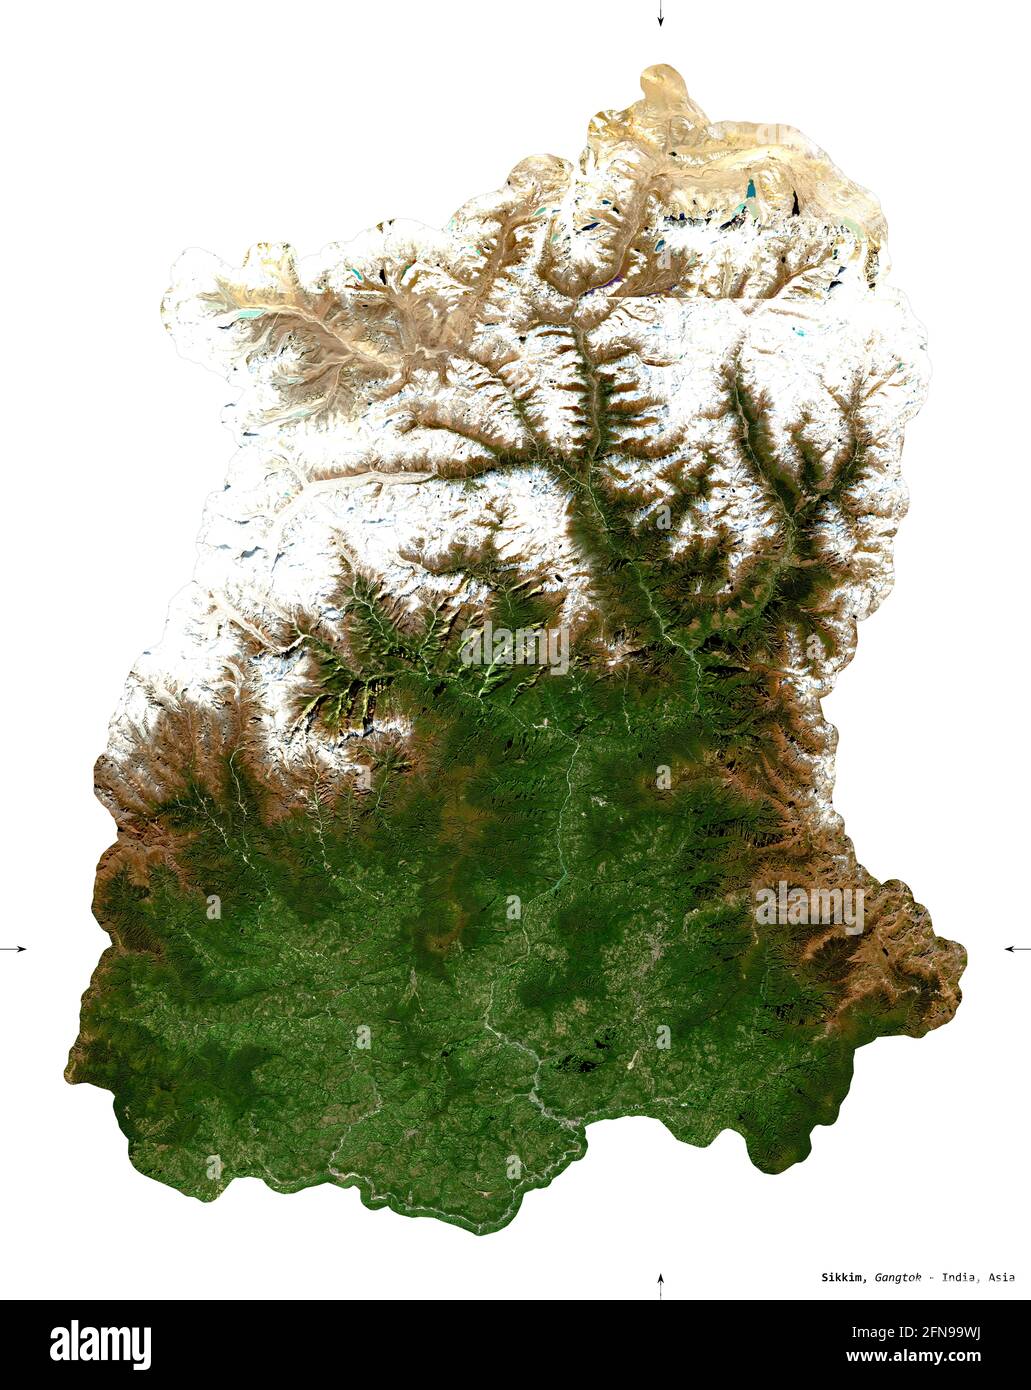 Sikkim, stato dell'India. Immagini satellitari Sentinel-2. Forma isolata su bianco. Descrizione, ubicazione della capitale. Contiene Copernico modificato inviato Foto Stock